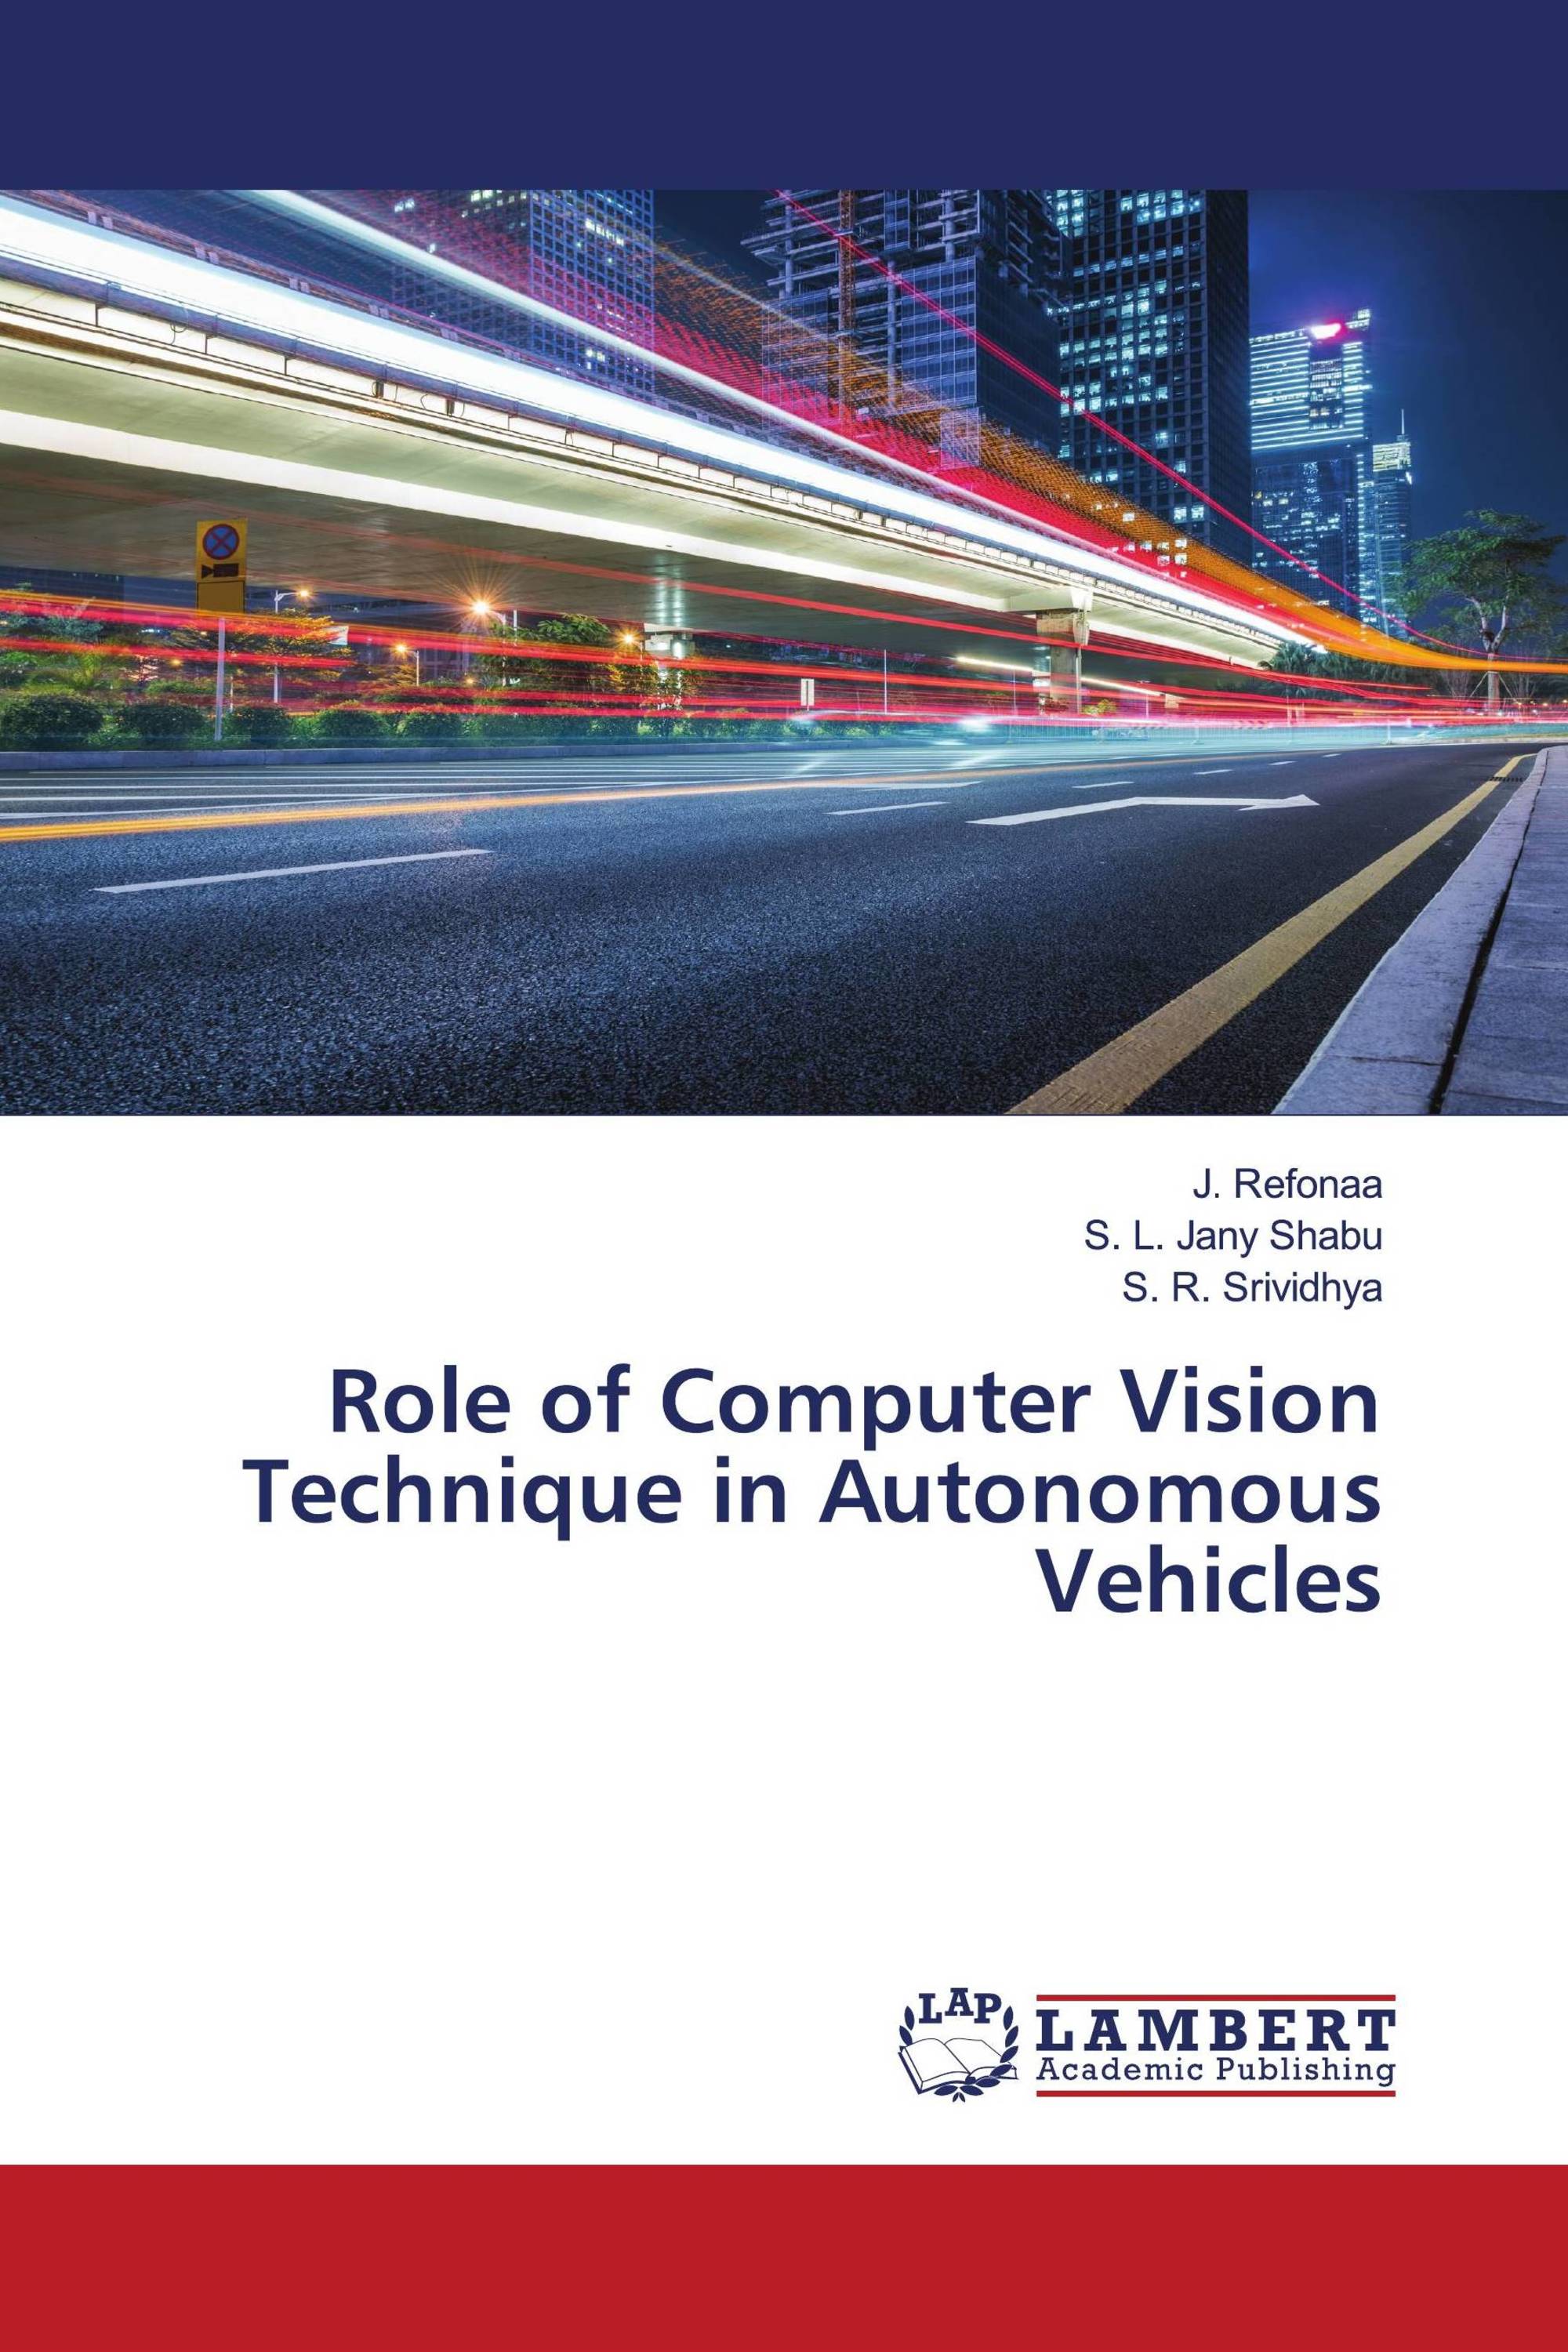 Role of Computer Vision Technique in Autonomous Vehicles